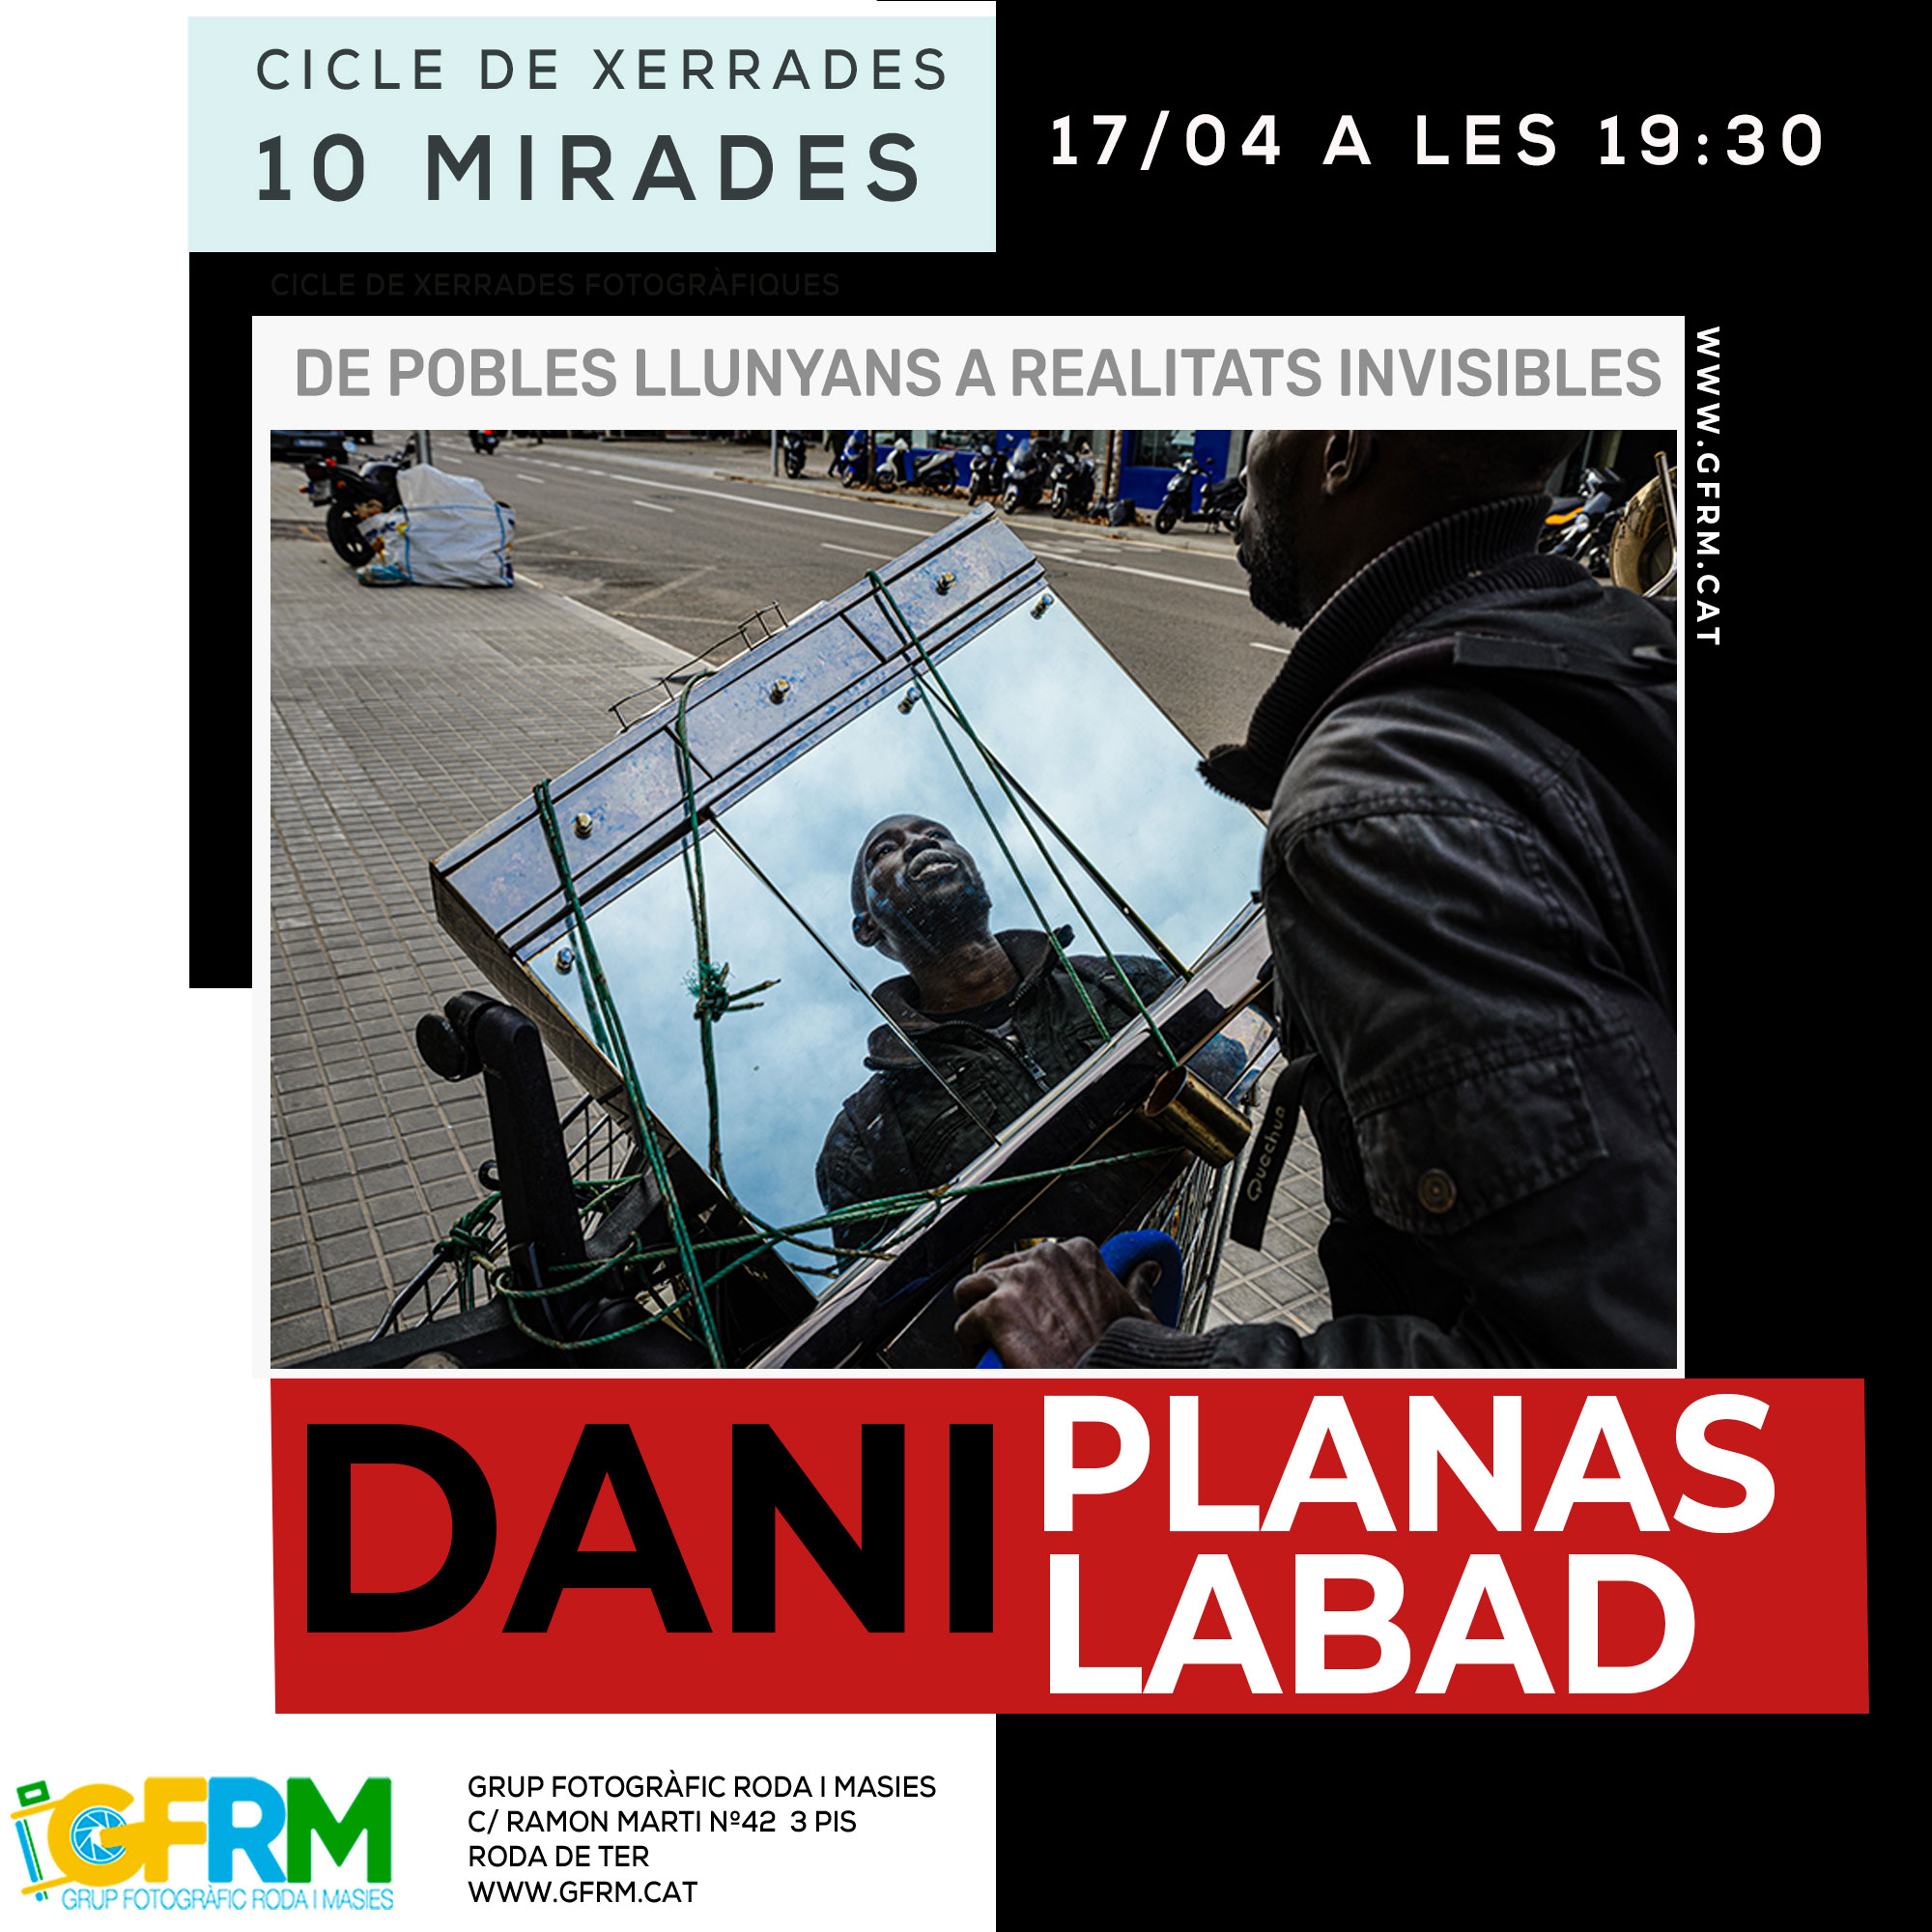 Dani Planas Labad -de pobles llunyans a realitats invisibles